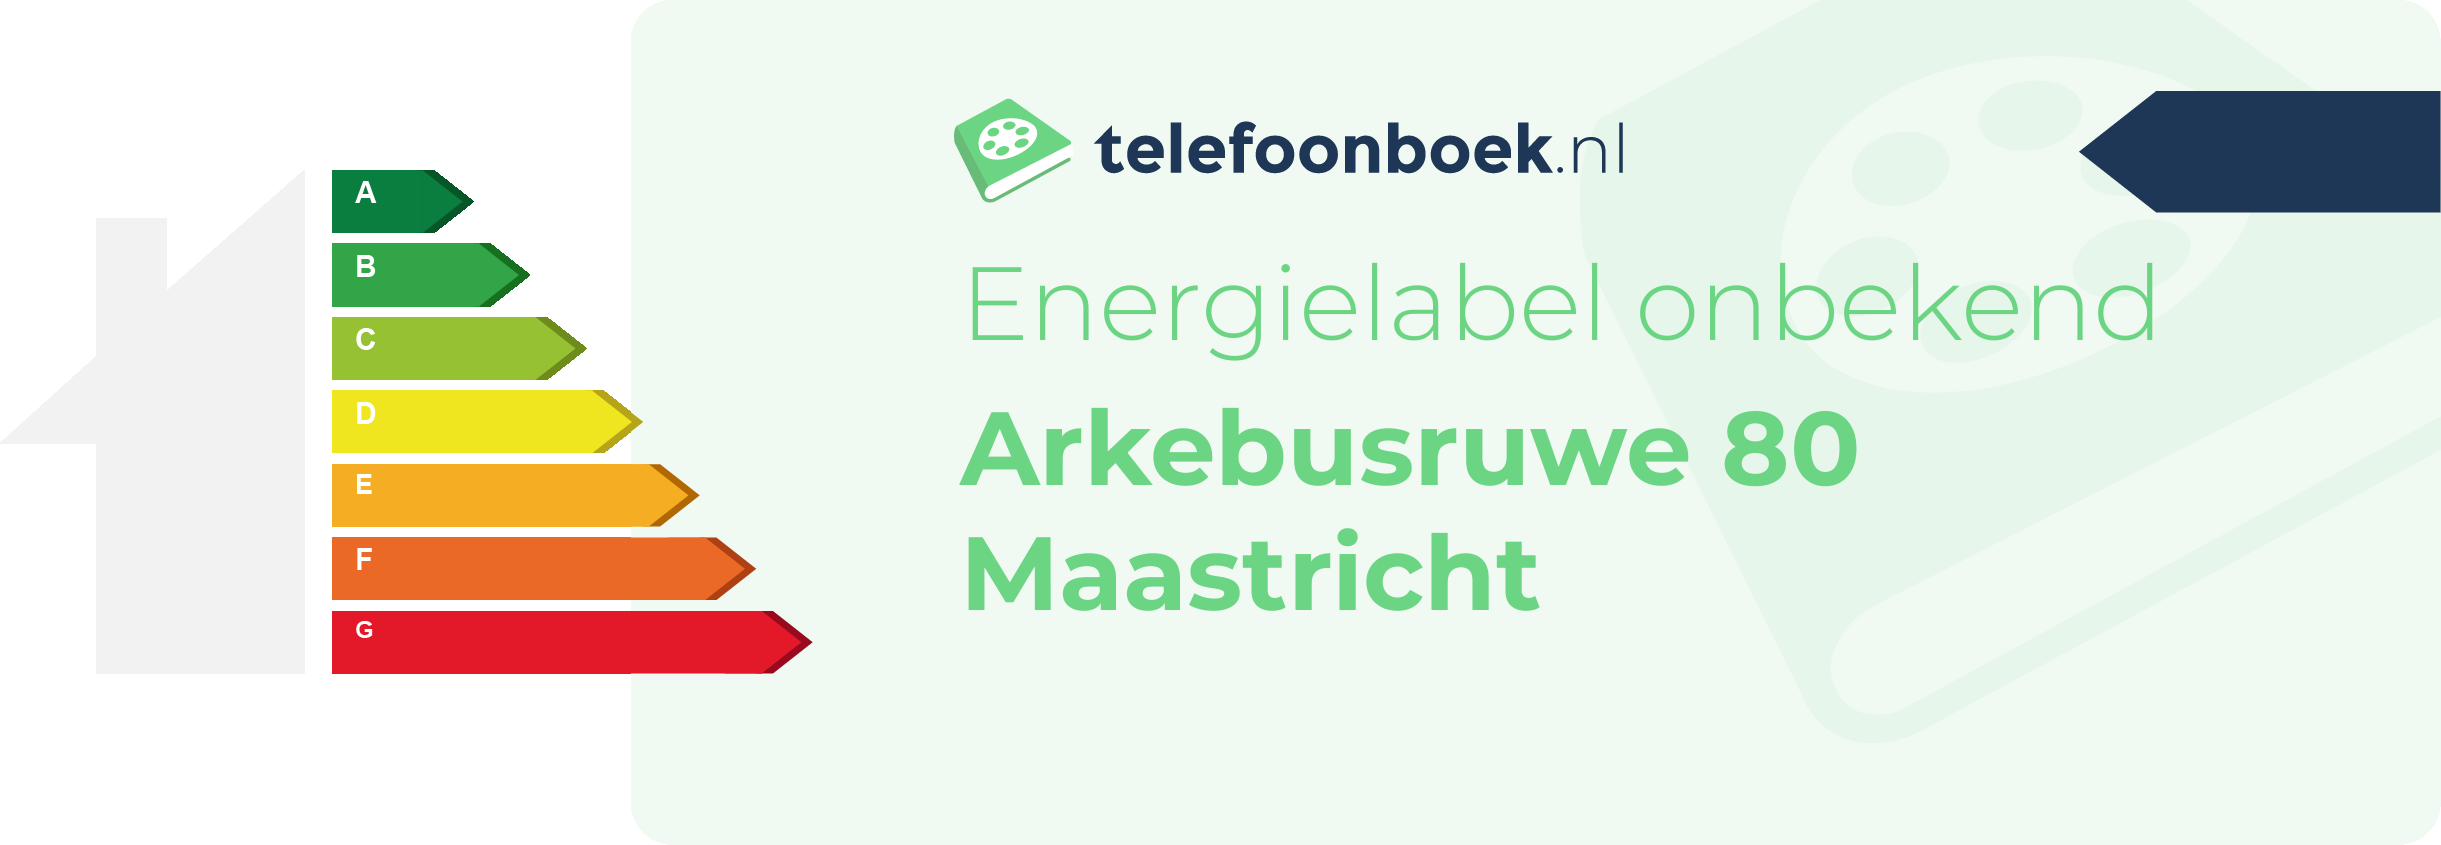 Energielabel Arkebusruwe 80 Maastricht